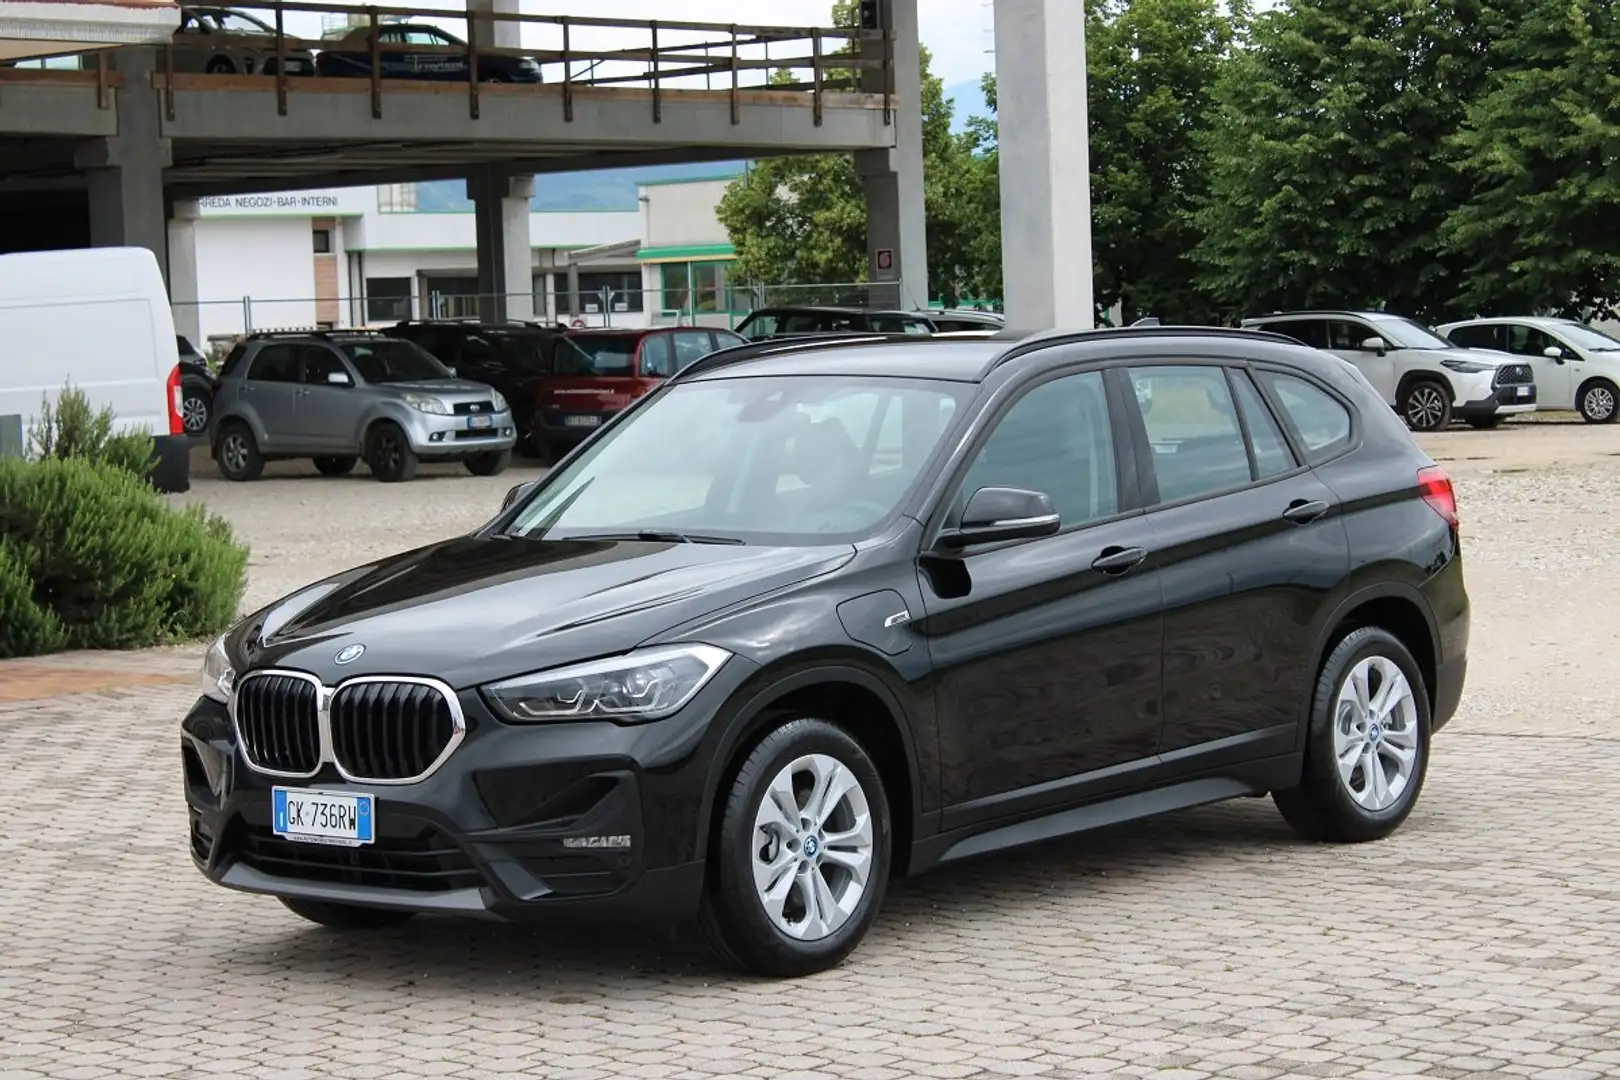 km0 BMW X1 SUV/Fuoristrada/Pick-up a Vidor - Treviso - Tv per € 38.790,-